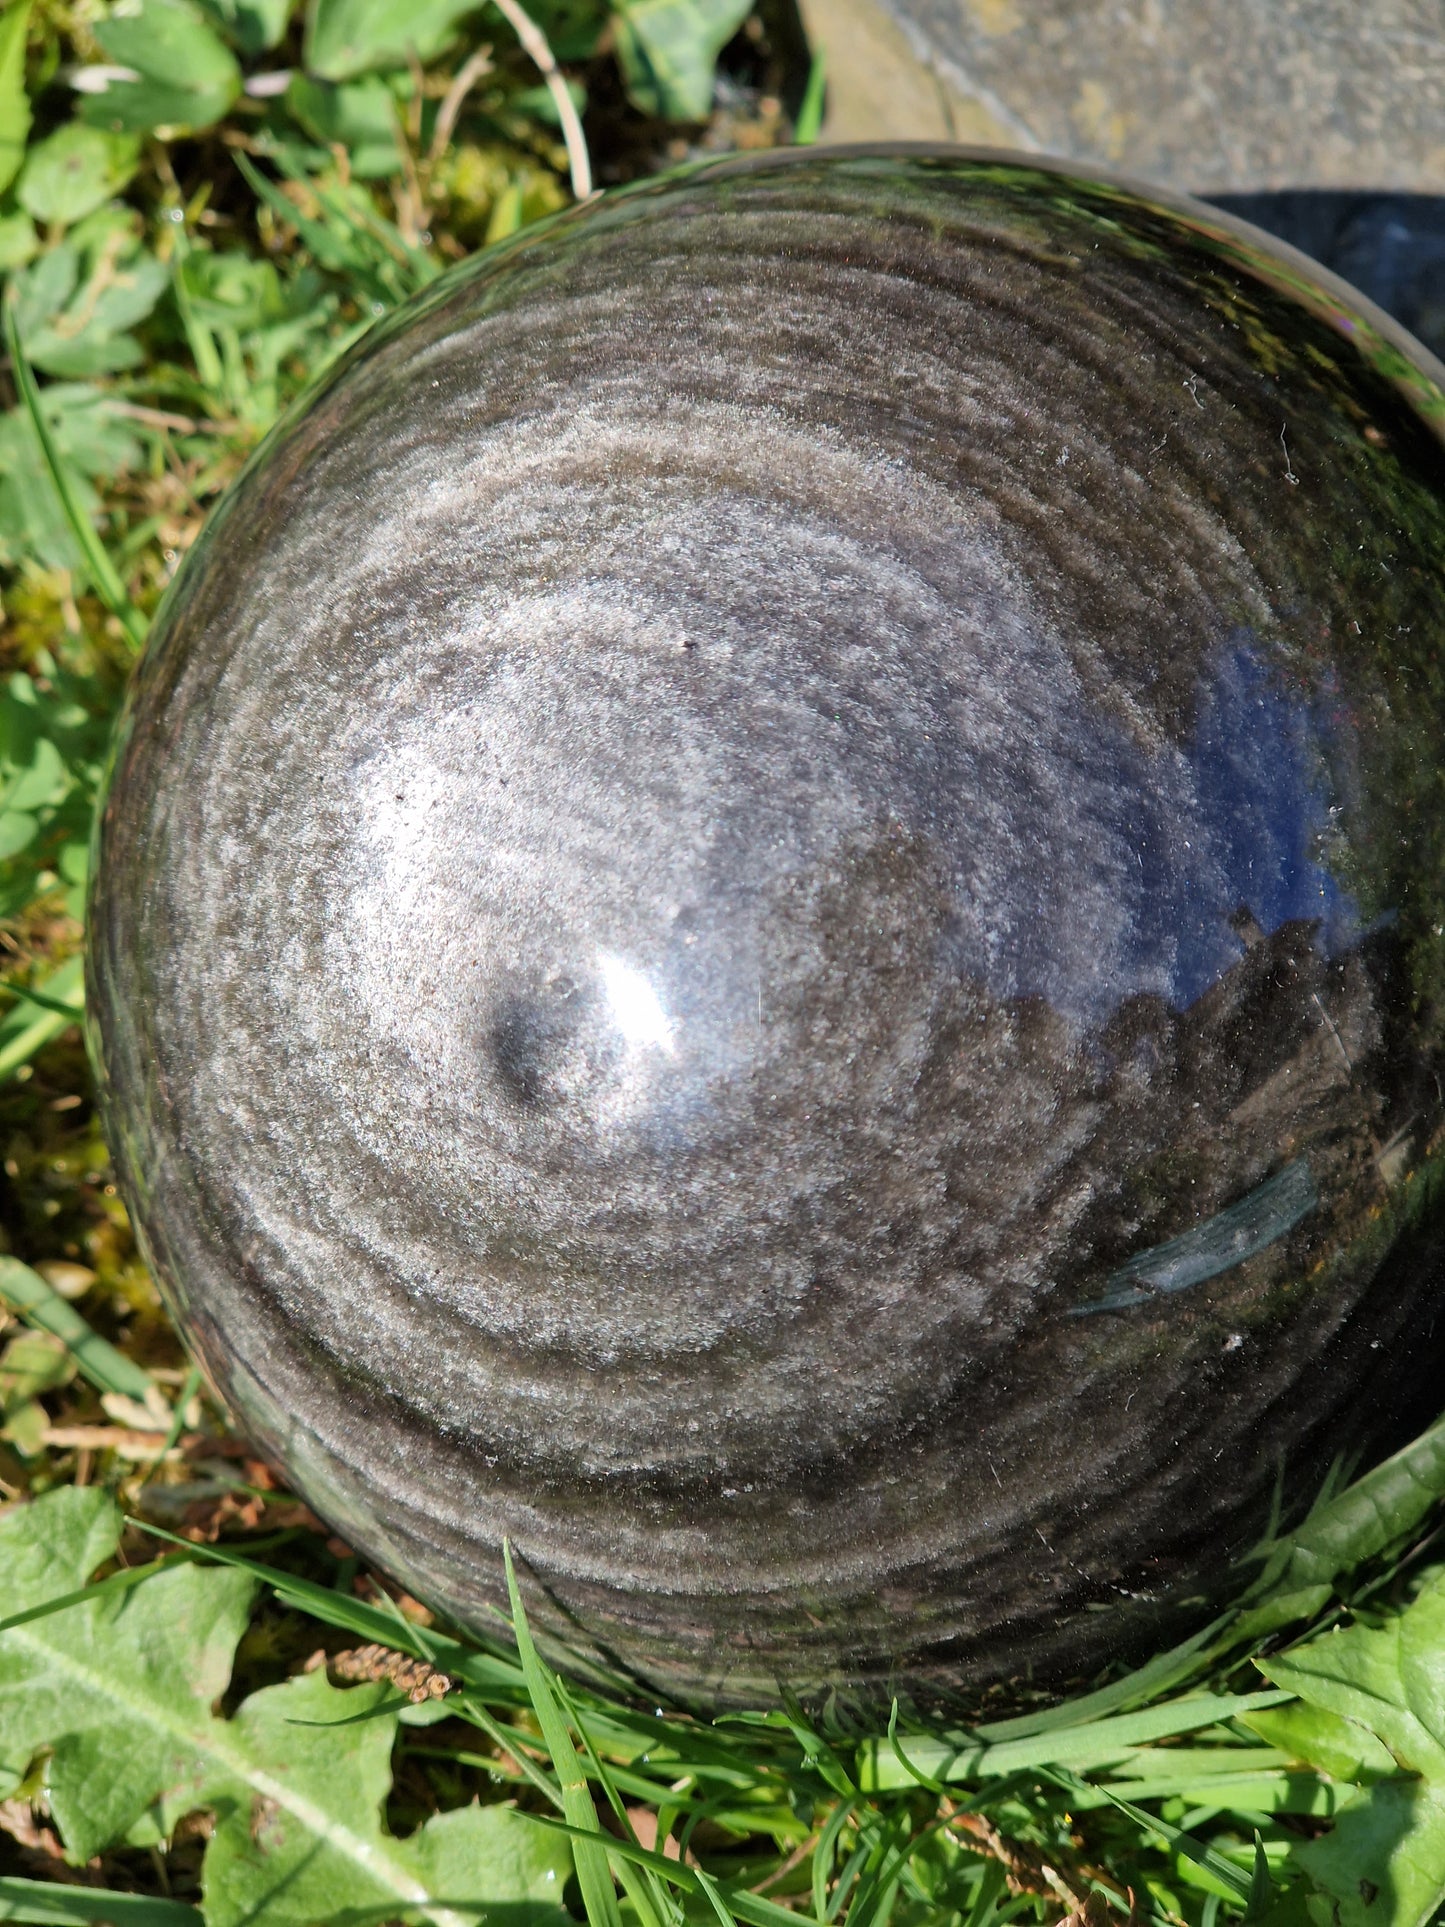 Grosse sphère Obsidienne argentée OA2